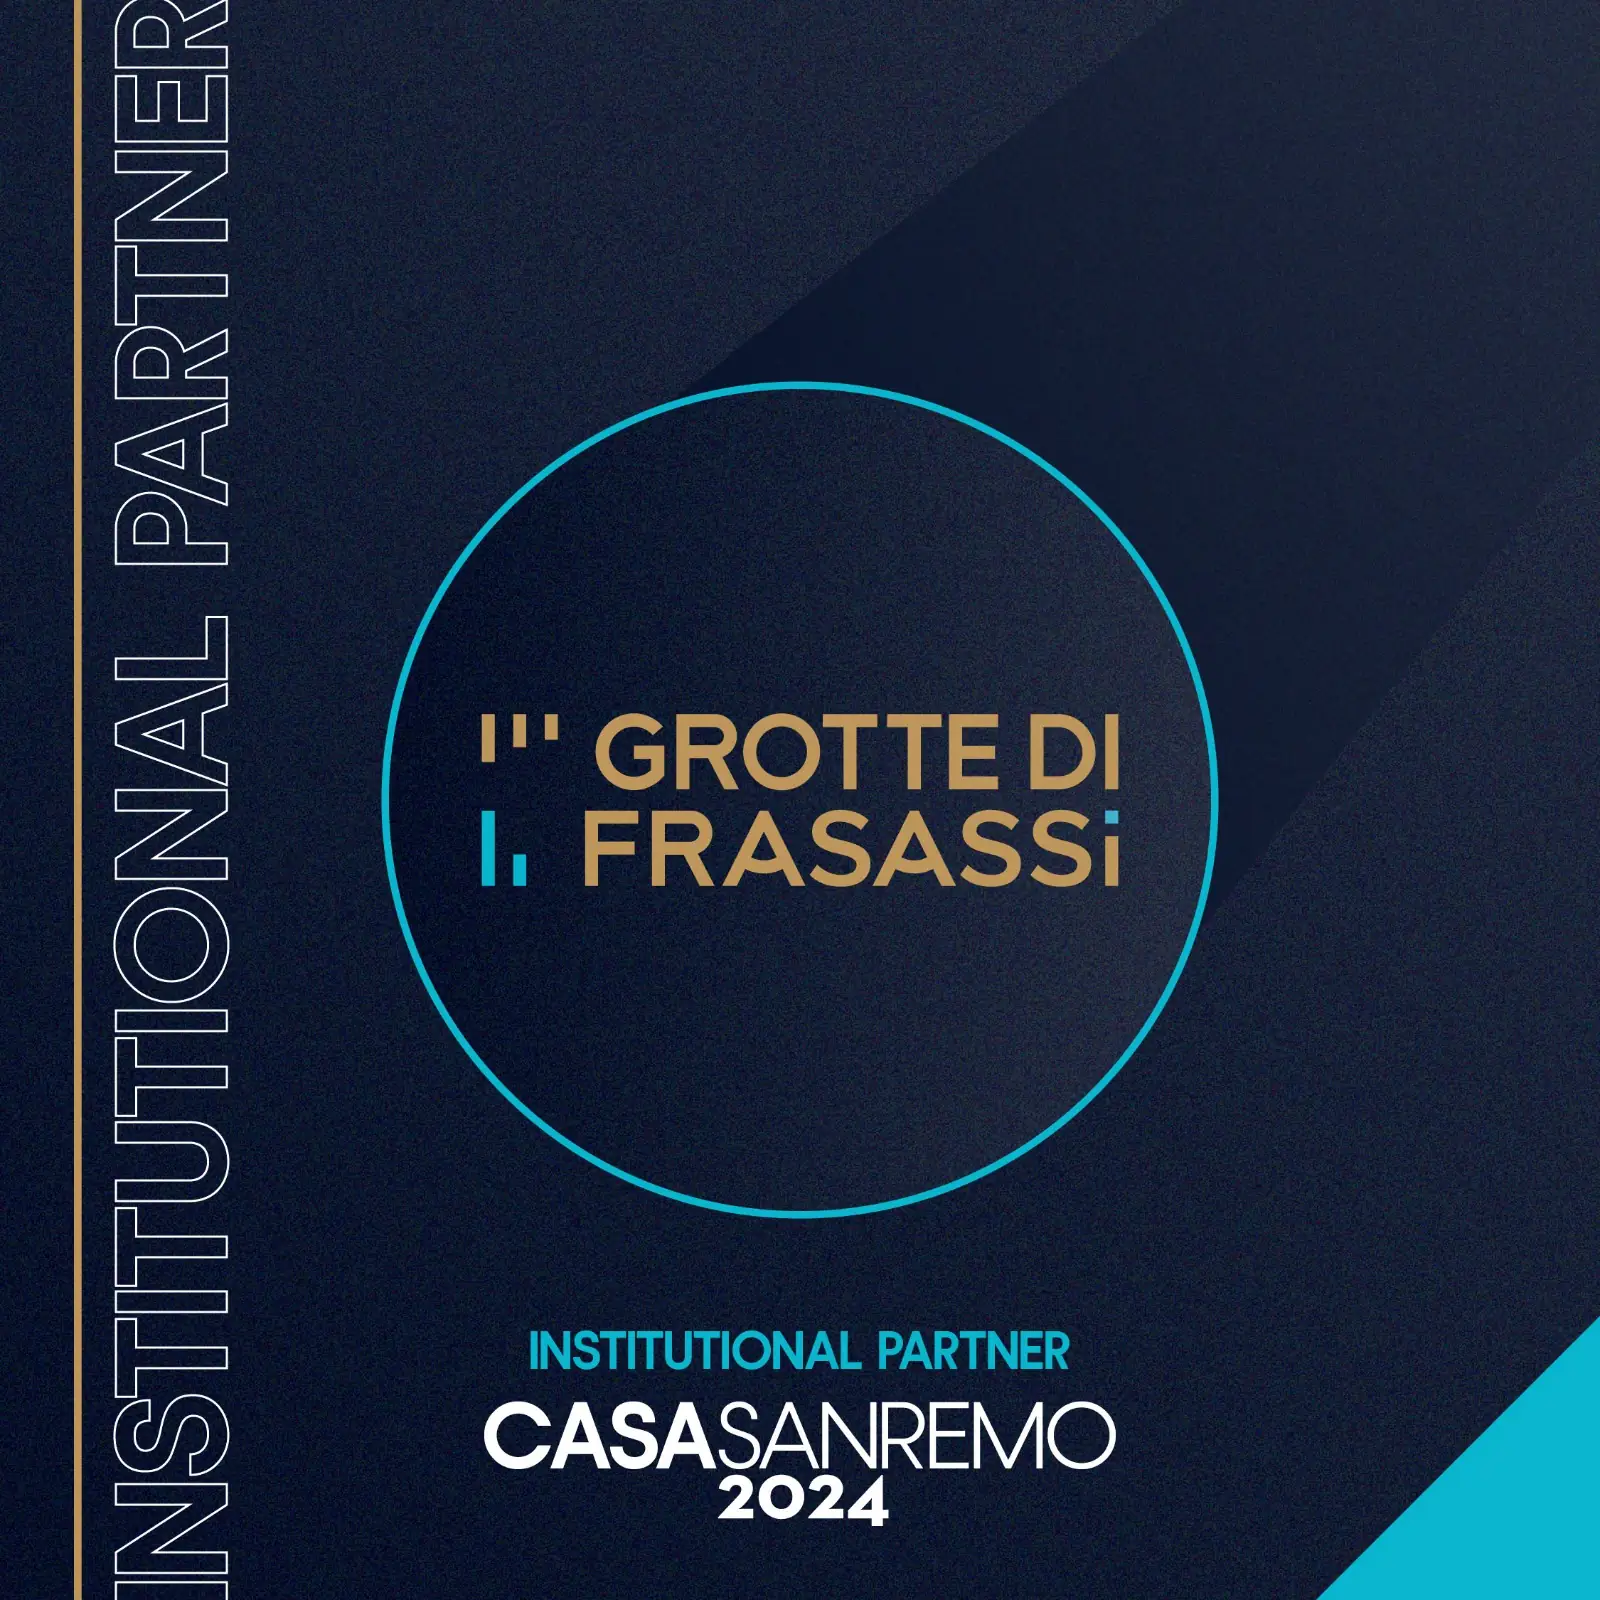 Casa Sanremo 2024 - Le favolose Grotte di Frasassi a Casa Sanremo con la nuova serie live action della Rainbow “Gormiti -The New Era”